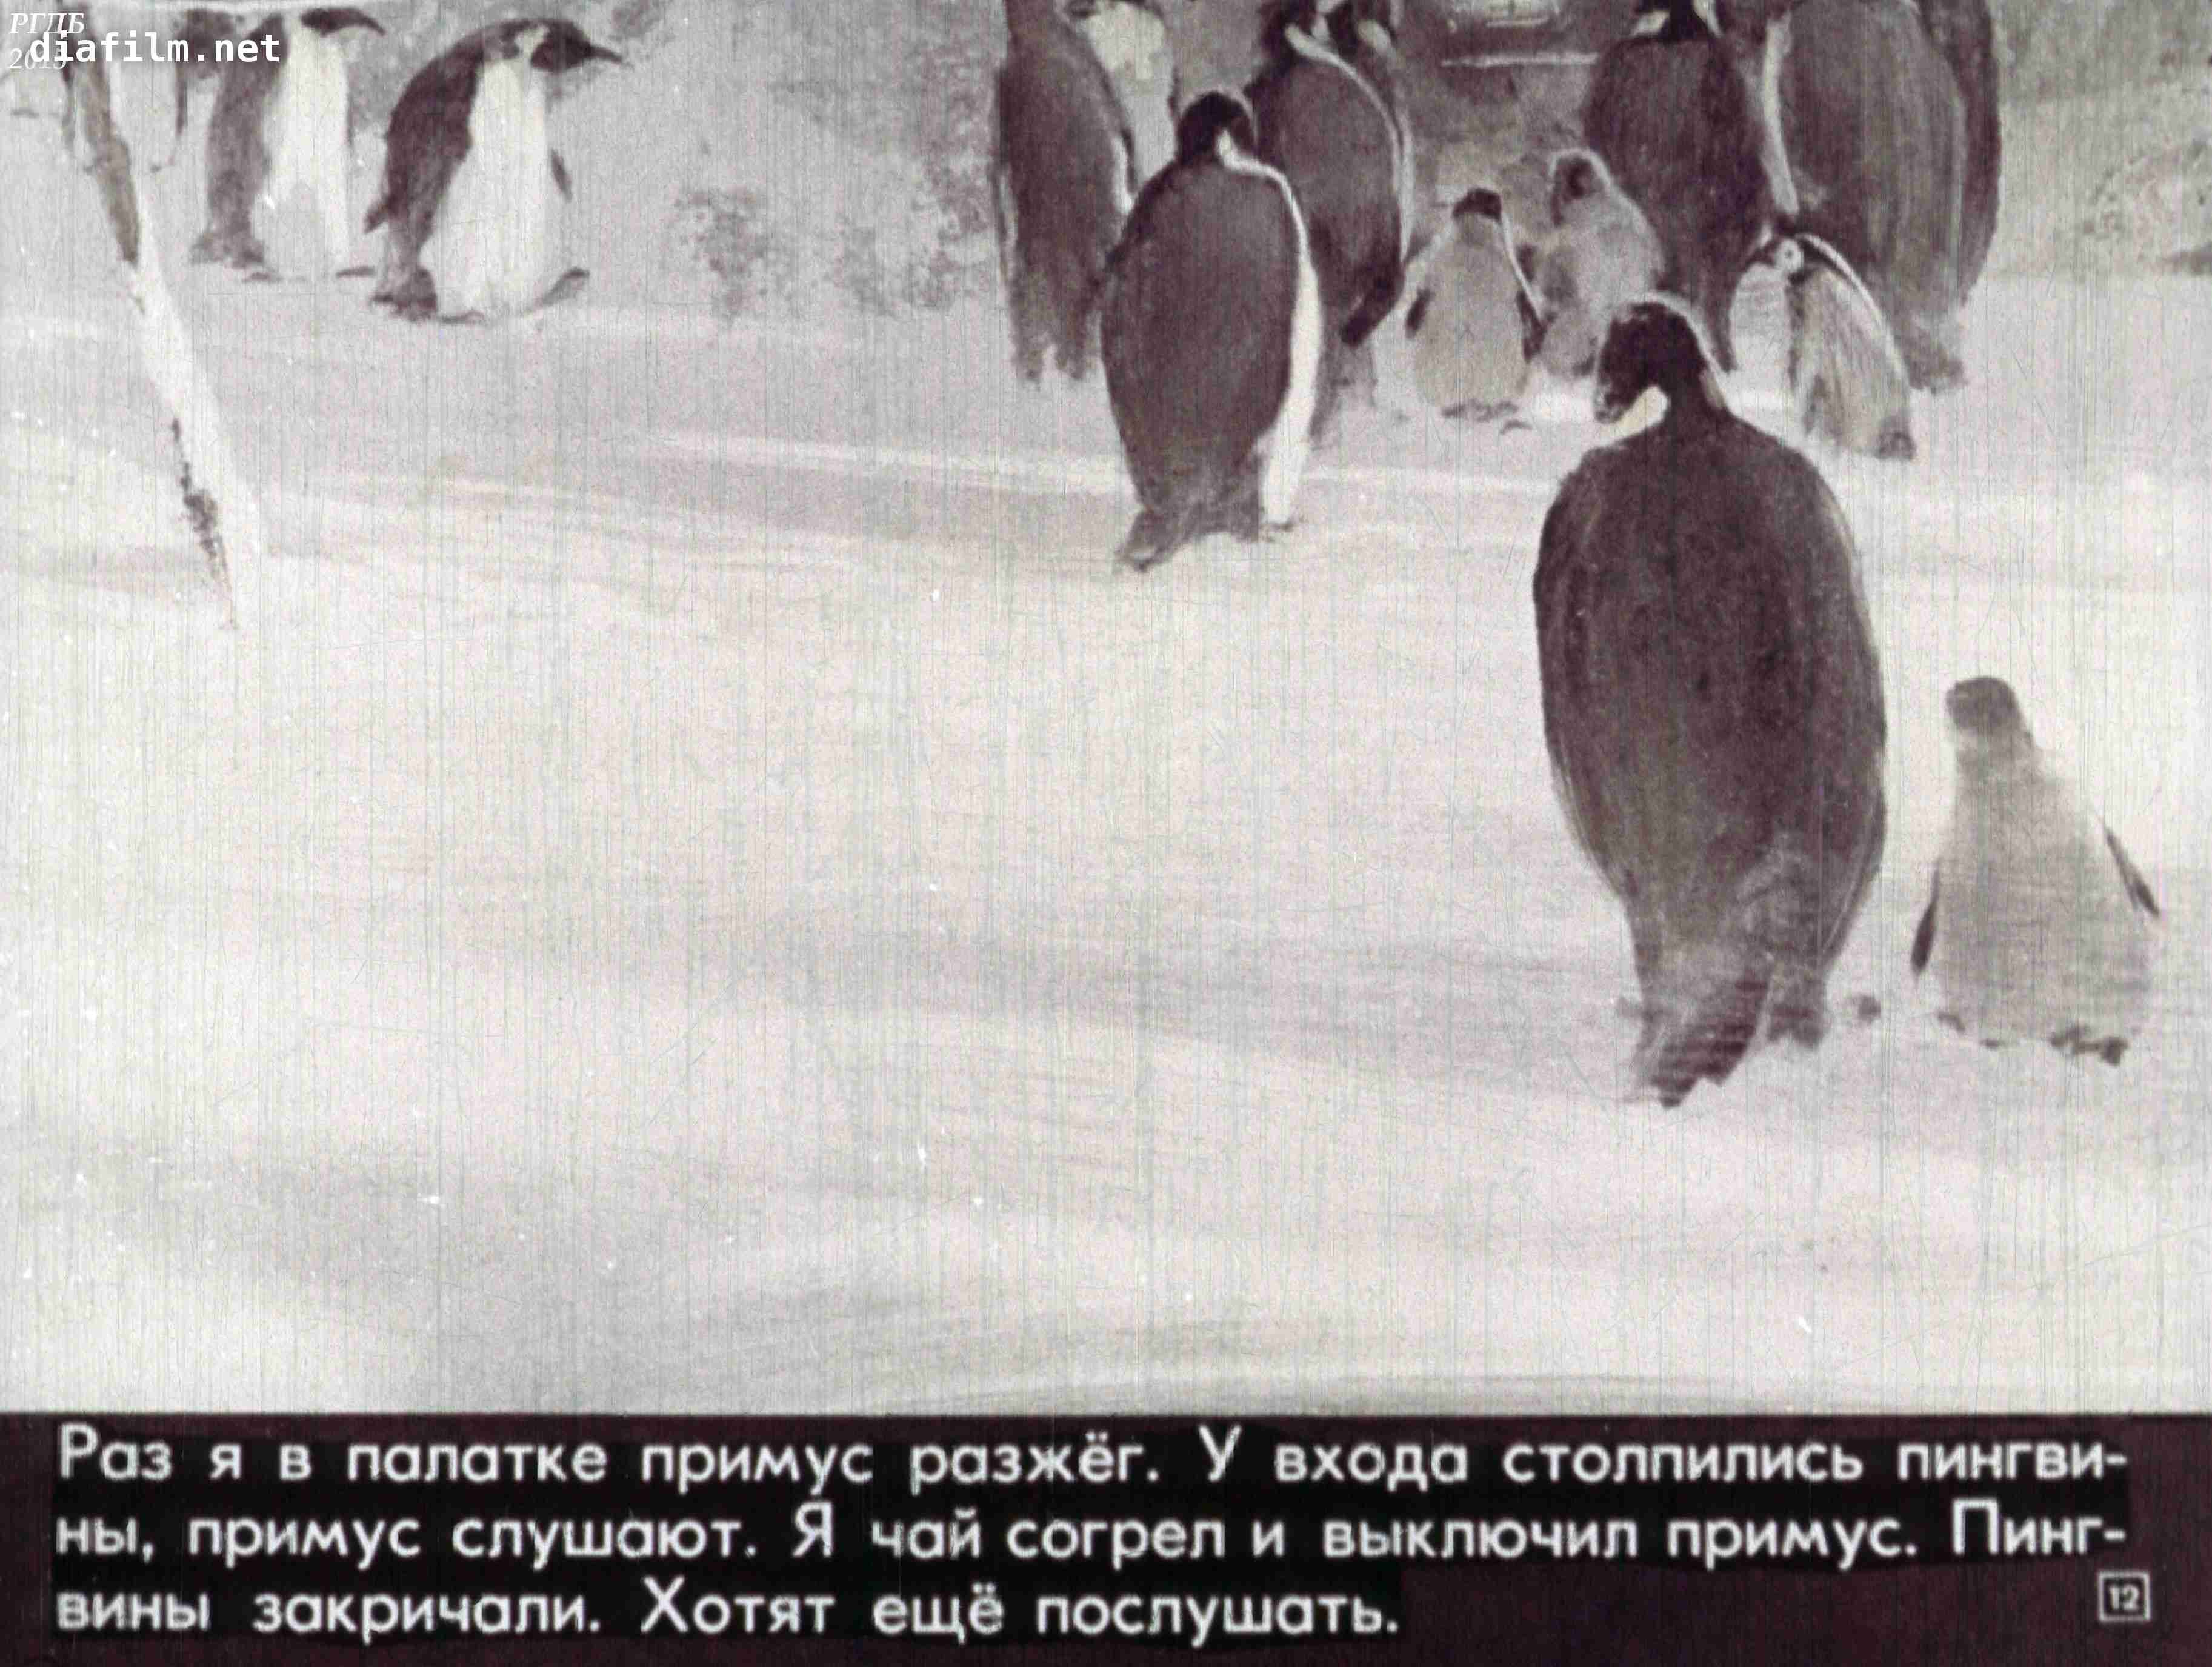 Пересказ снегирева про пингвинов в старшей группе. Г. Снегирёв "про пингвинов" 11. Г Снегирева про пингвинов рассказ. Г Снегирев про пингвинов иллюстрации. Текст рассказов Снегирева про пингвинов.